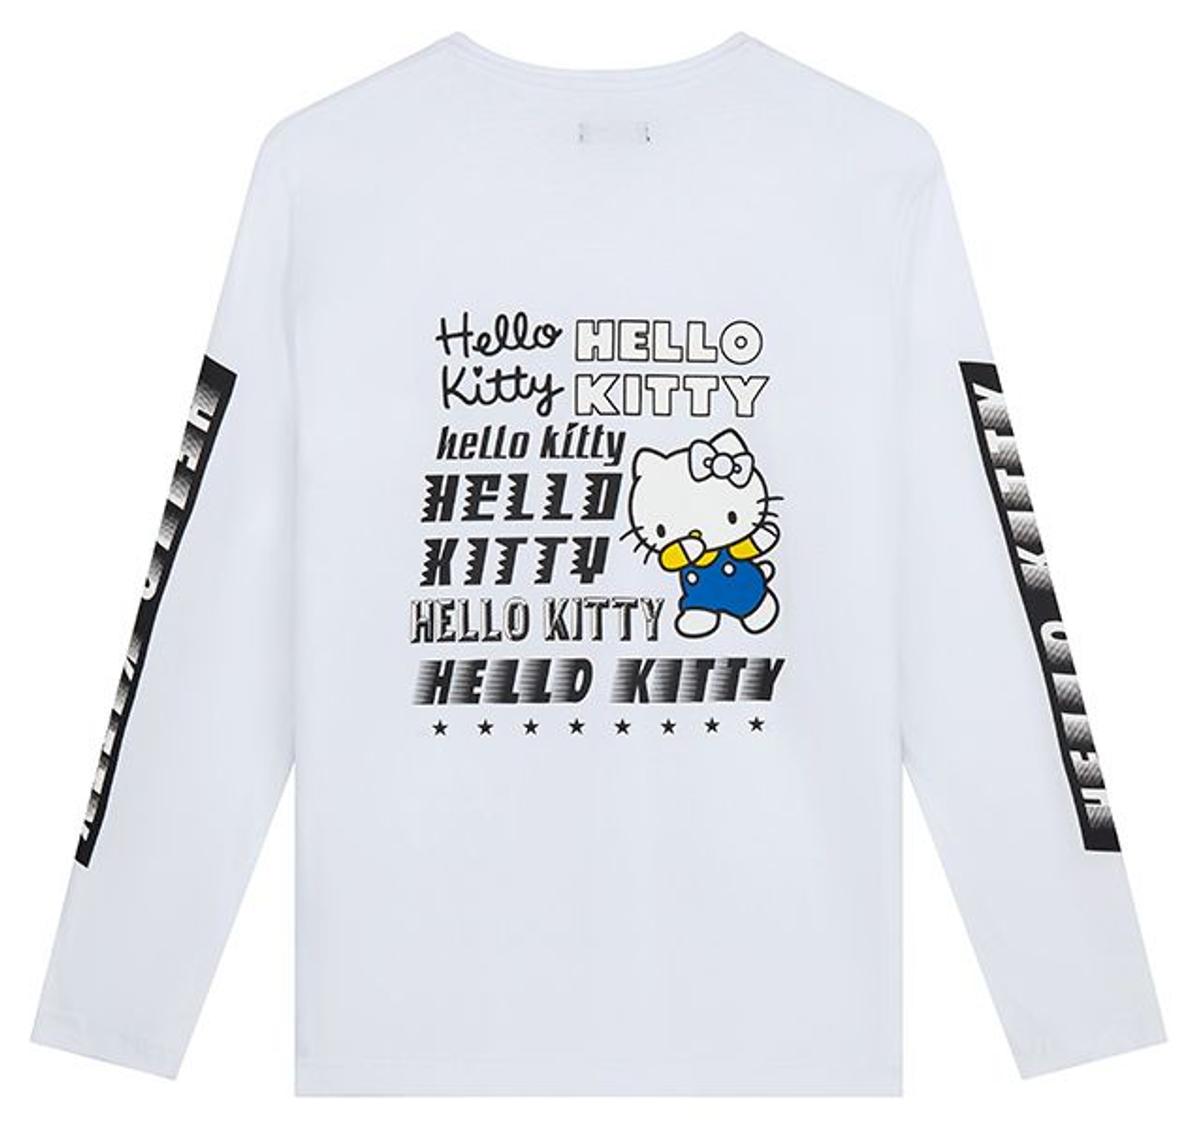 Sudadera blanca con texto de Asos x Hello Kitty